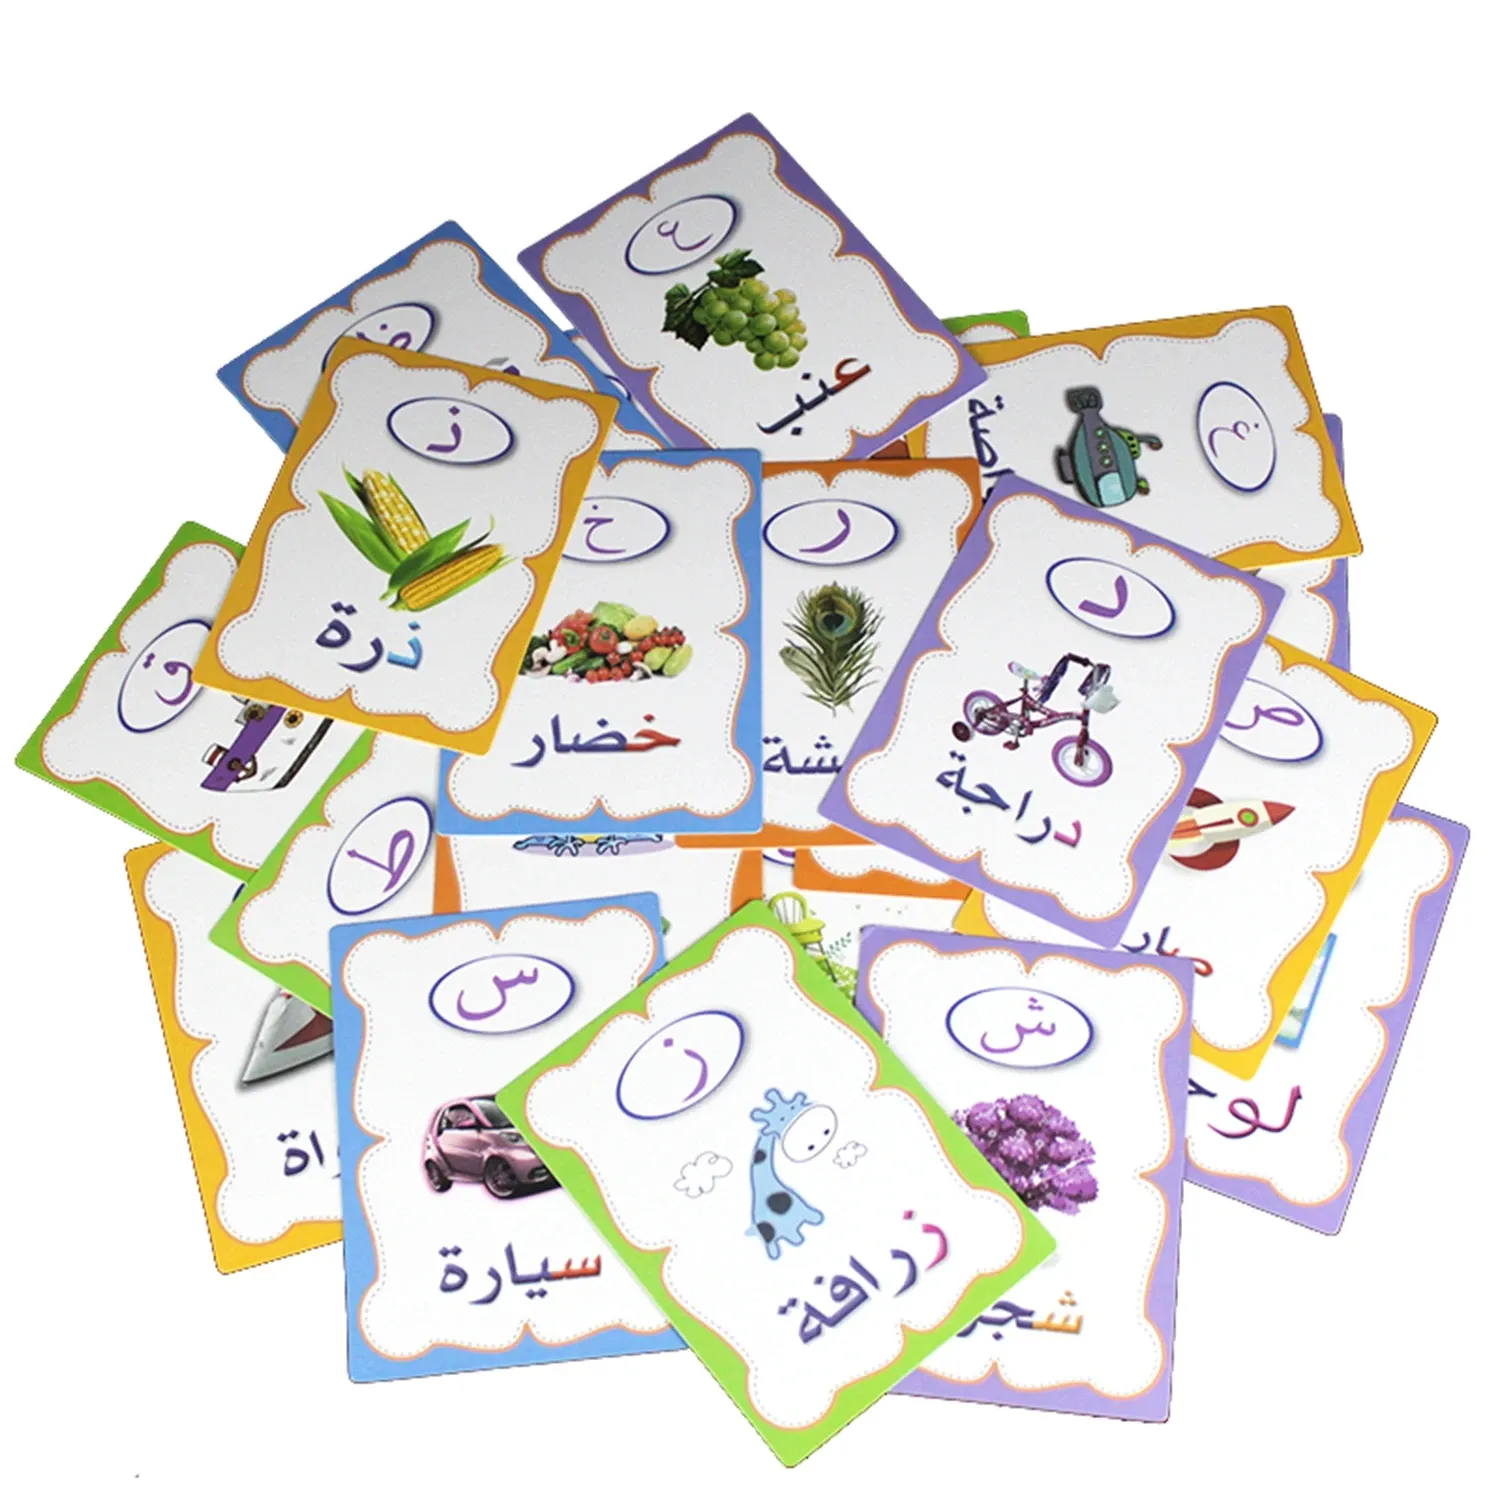 Kids-بطاقات أرقام تعليمية ، من مونتيسوري ، للأطفال, مجموعة مكونة من 26 حرف مختلف ، تصدر به كلمات باللغة العربية ، من ABC ، و تتميز بأحرف الأبجدية ، مناسبة للأطفال.